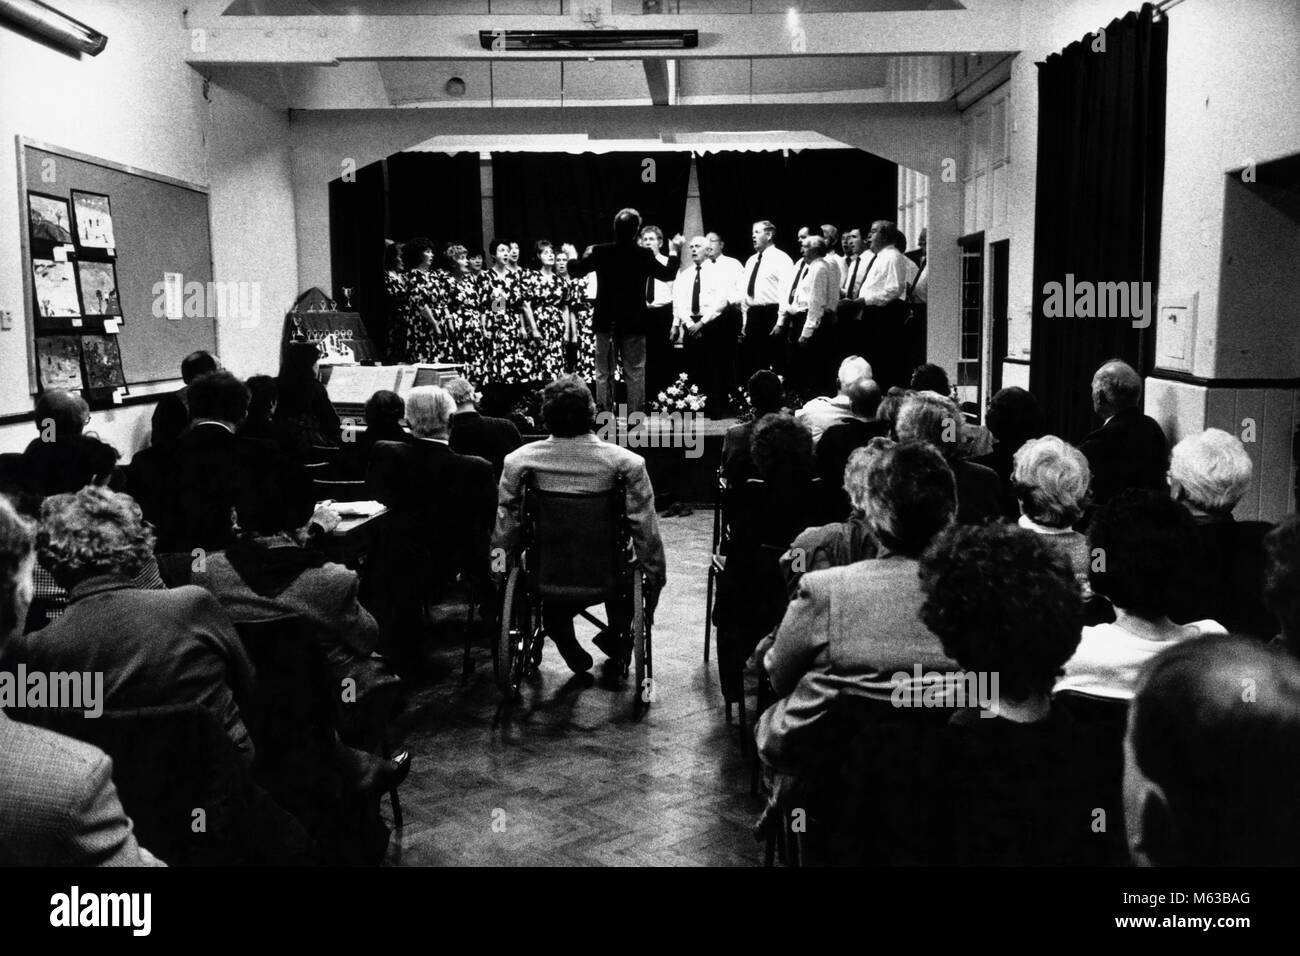 Choir singing on stage at small eisteddfod in village hall Talsarnau Gwynedd Wales UK Stock Photo